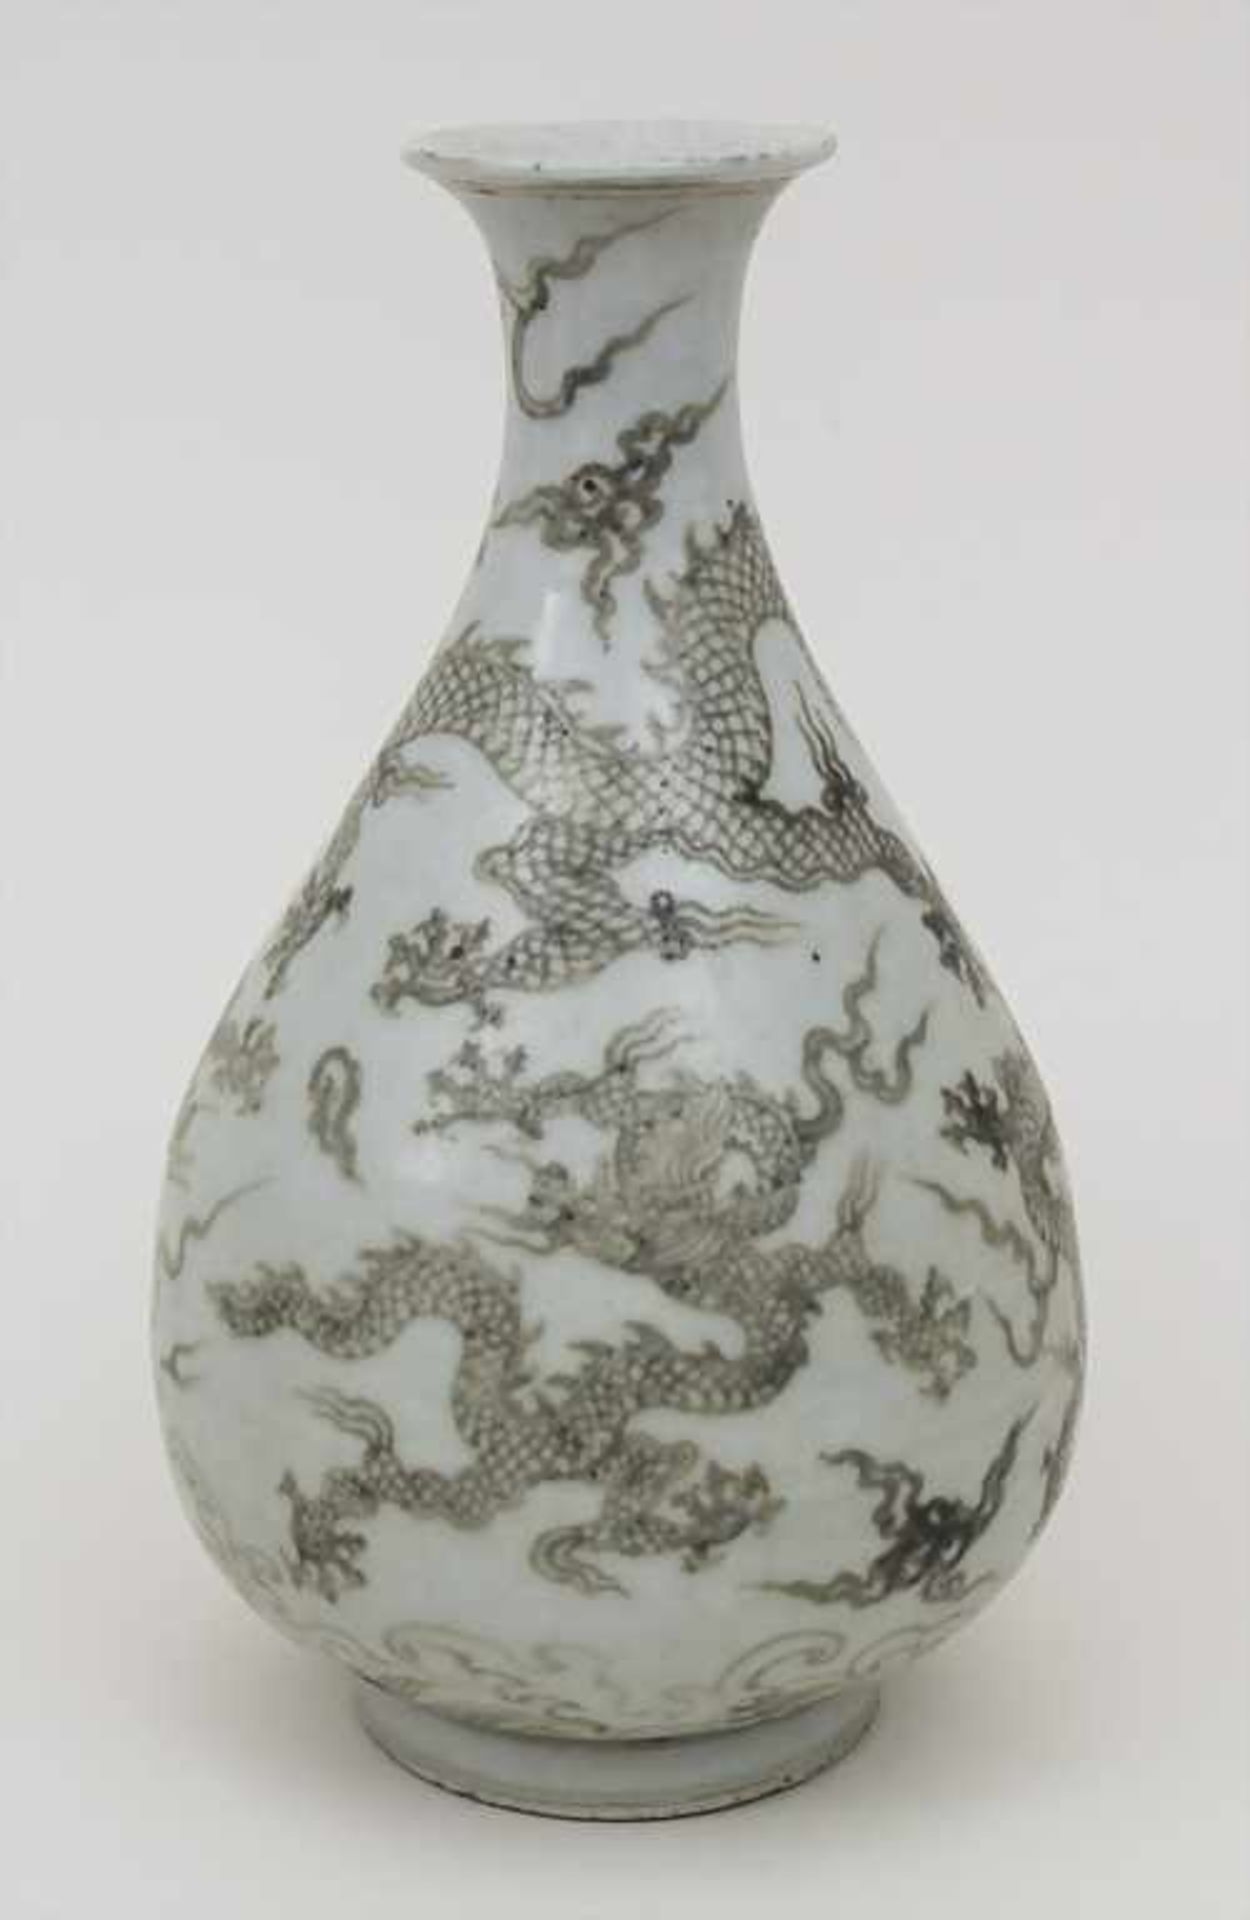 Drachenvase / A dragon vase, China, 19. Jh. Material: Porzellan, glasiert und farbig staffiert,